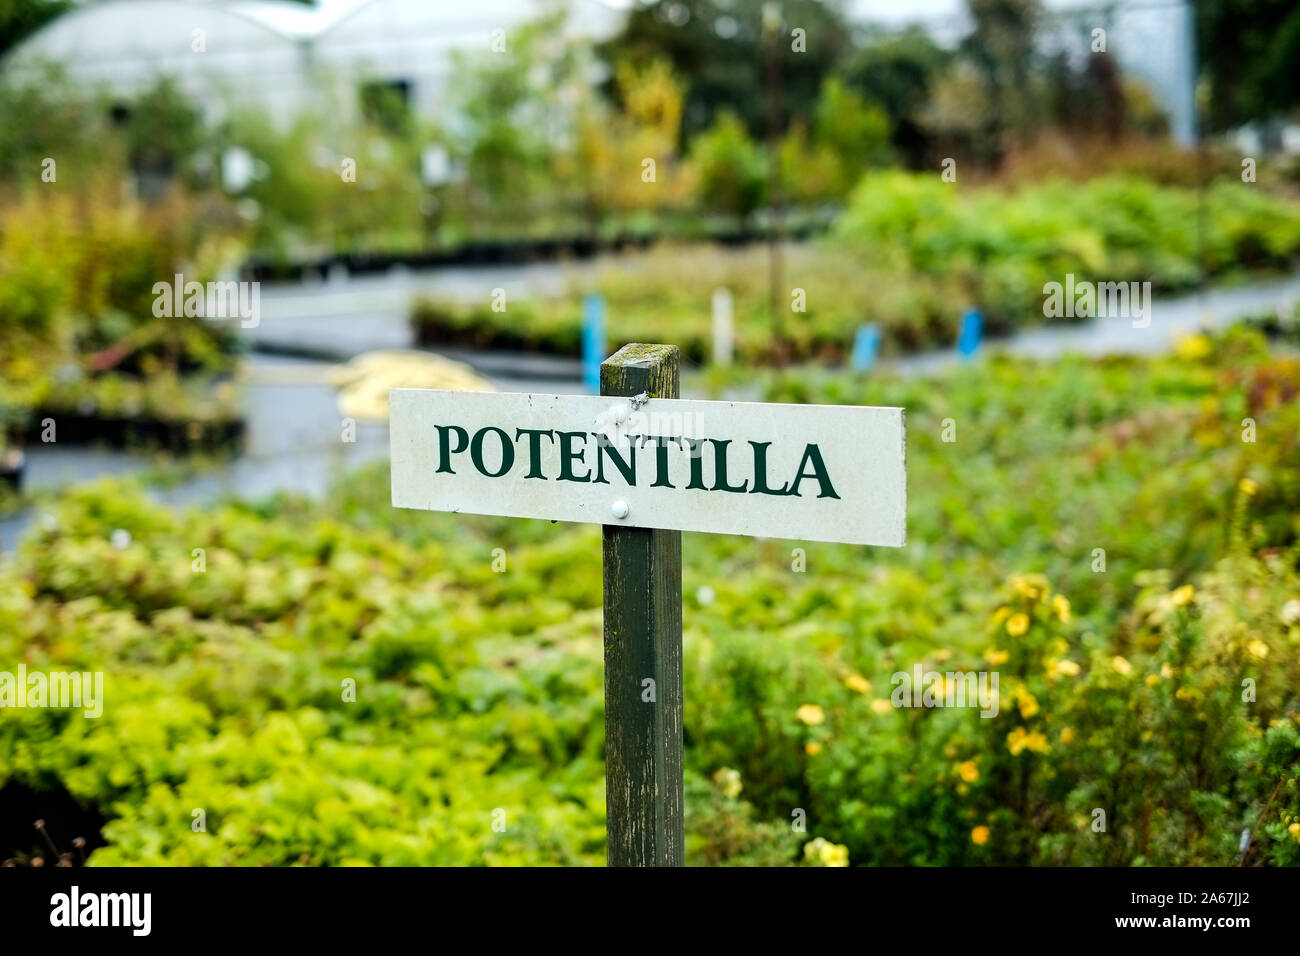 A sign for Potentilla plants in a garden centre nursery. Stock Photo